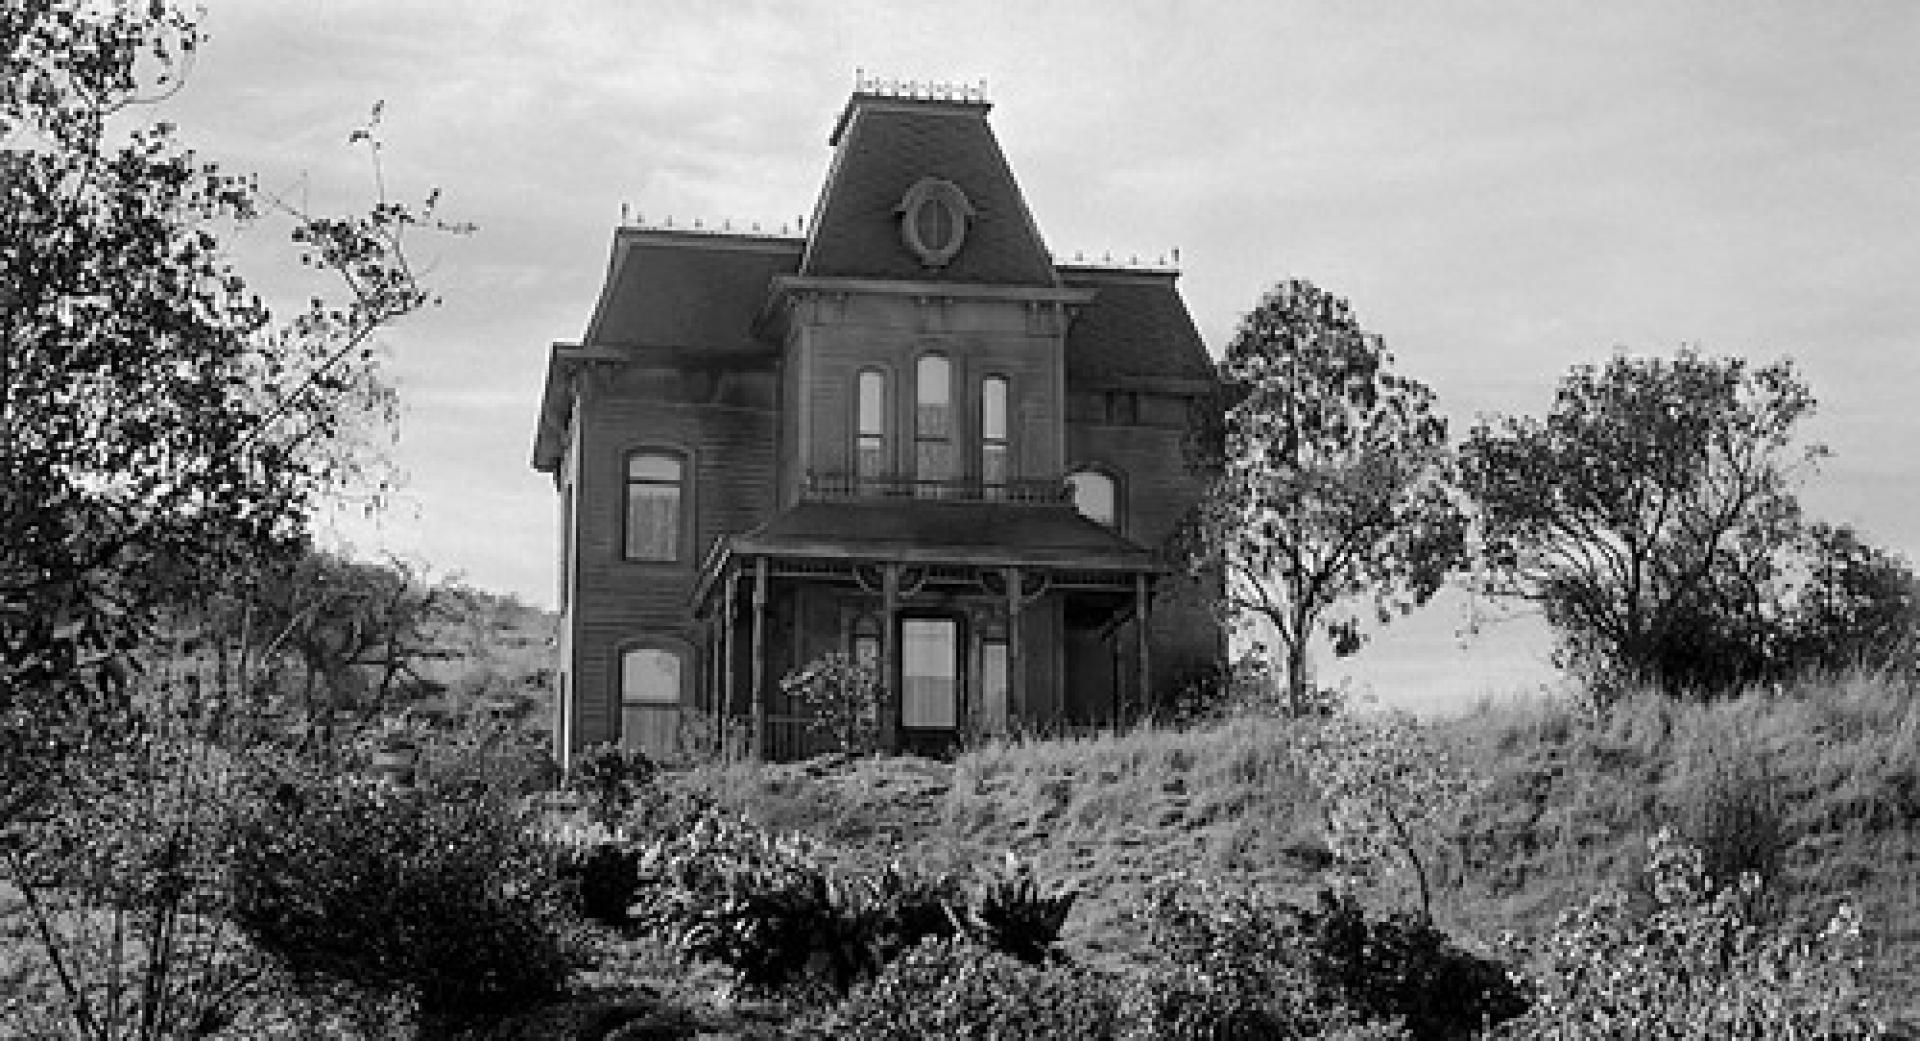 Bates Home in Psycho (1960) via Retroweb